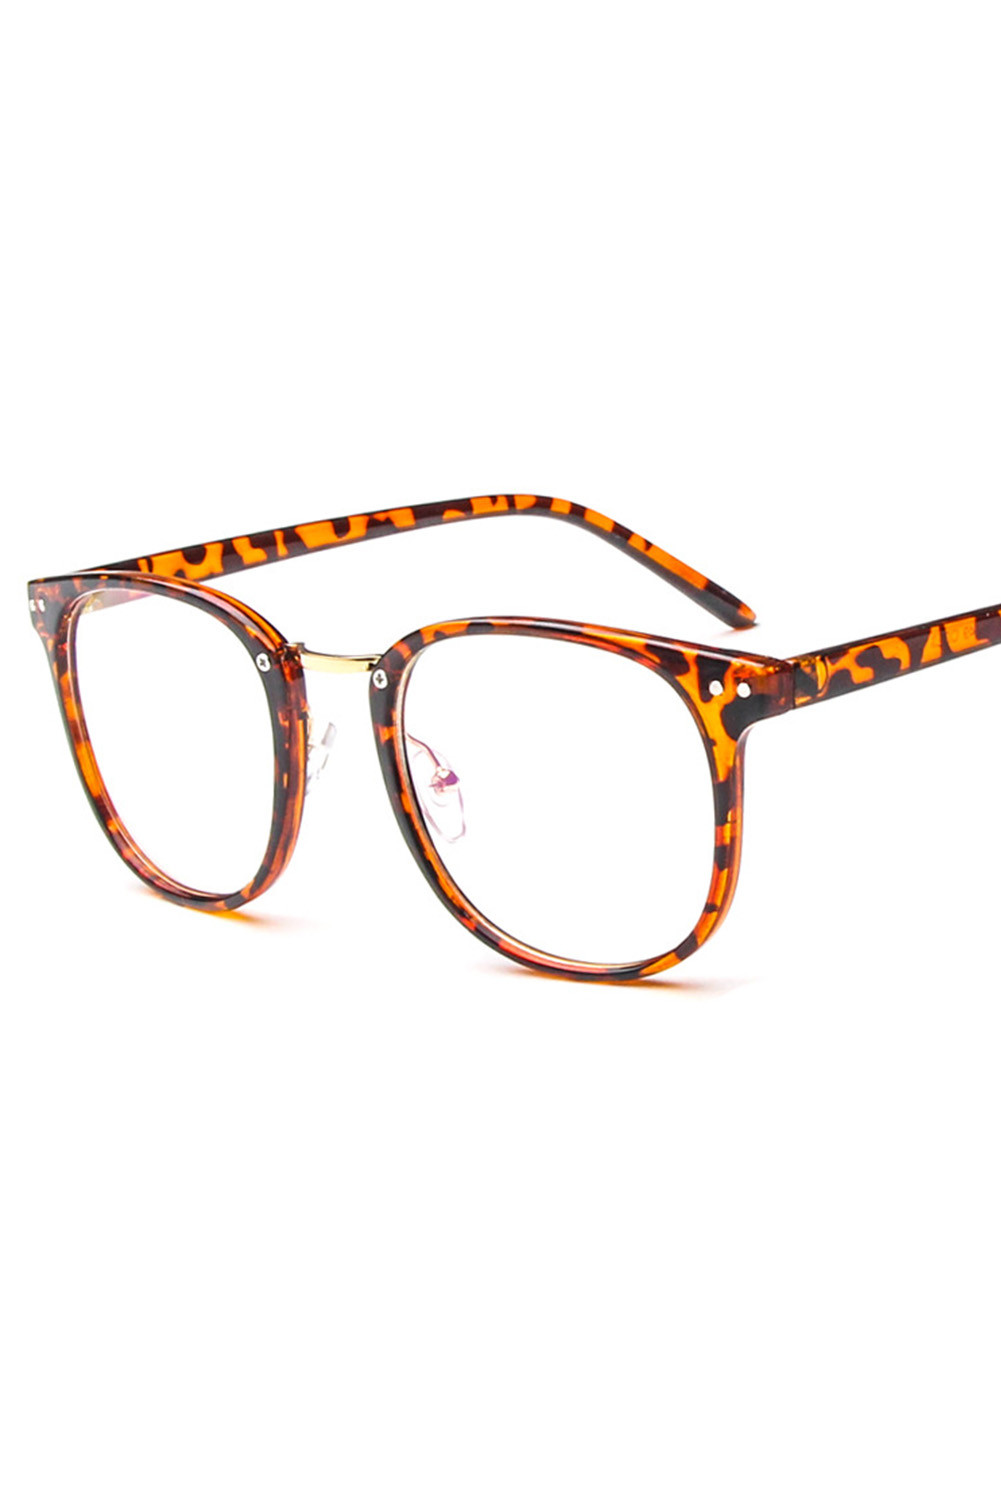 Wholesale Push It Production Cheap Leopard Decorative Eyeglasses Retro